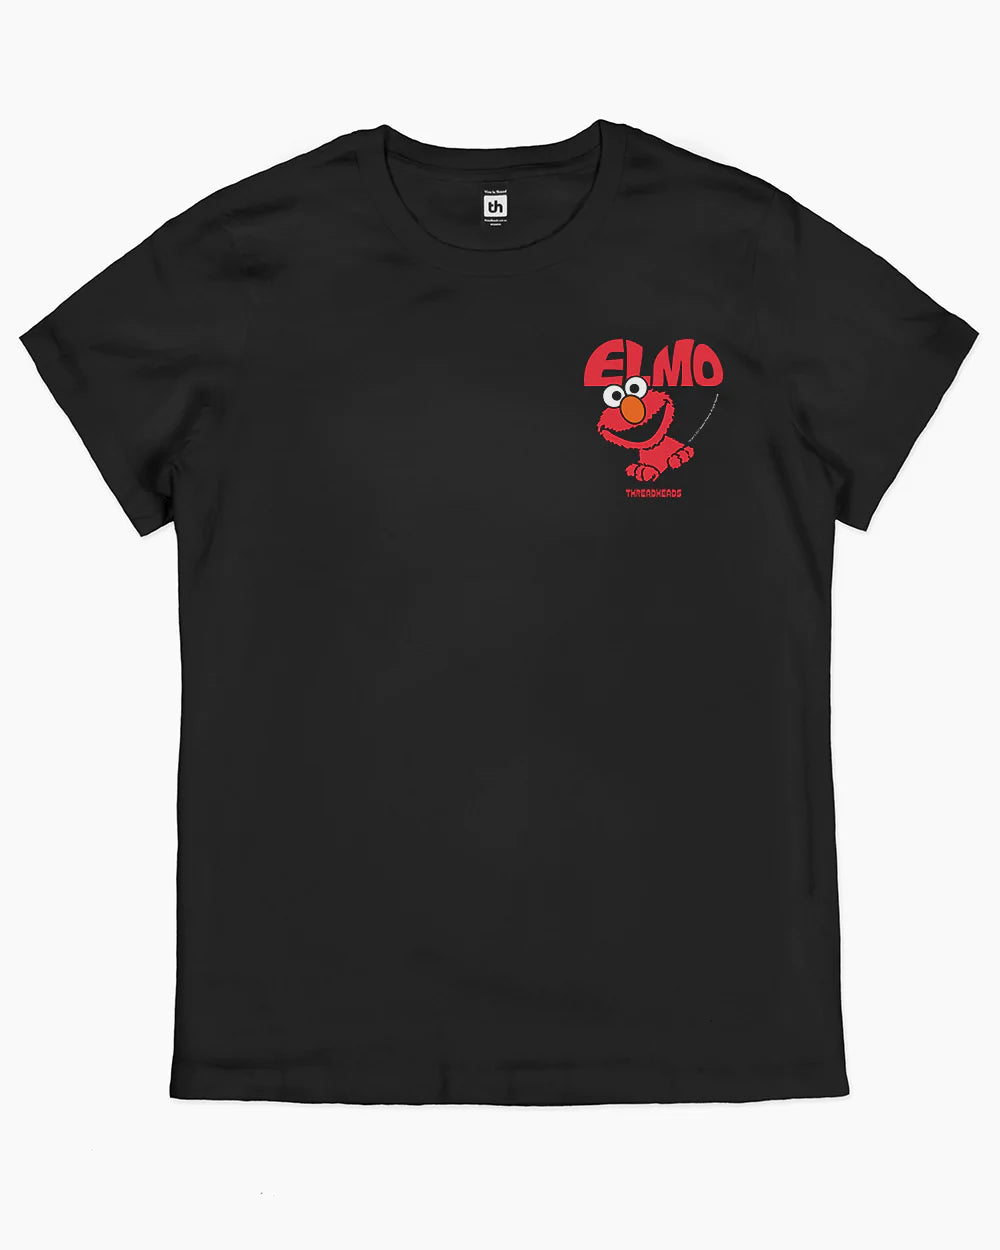 Elmo Face T-Shirt Australia Online #colour_black